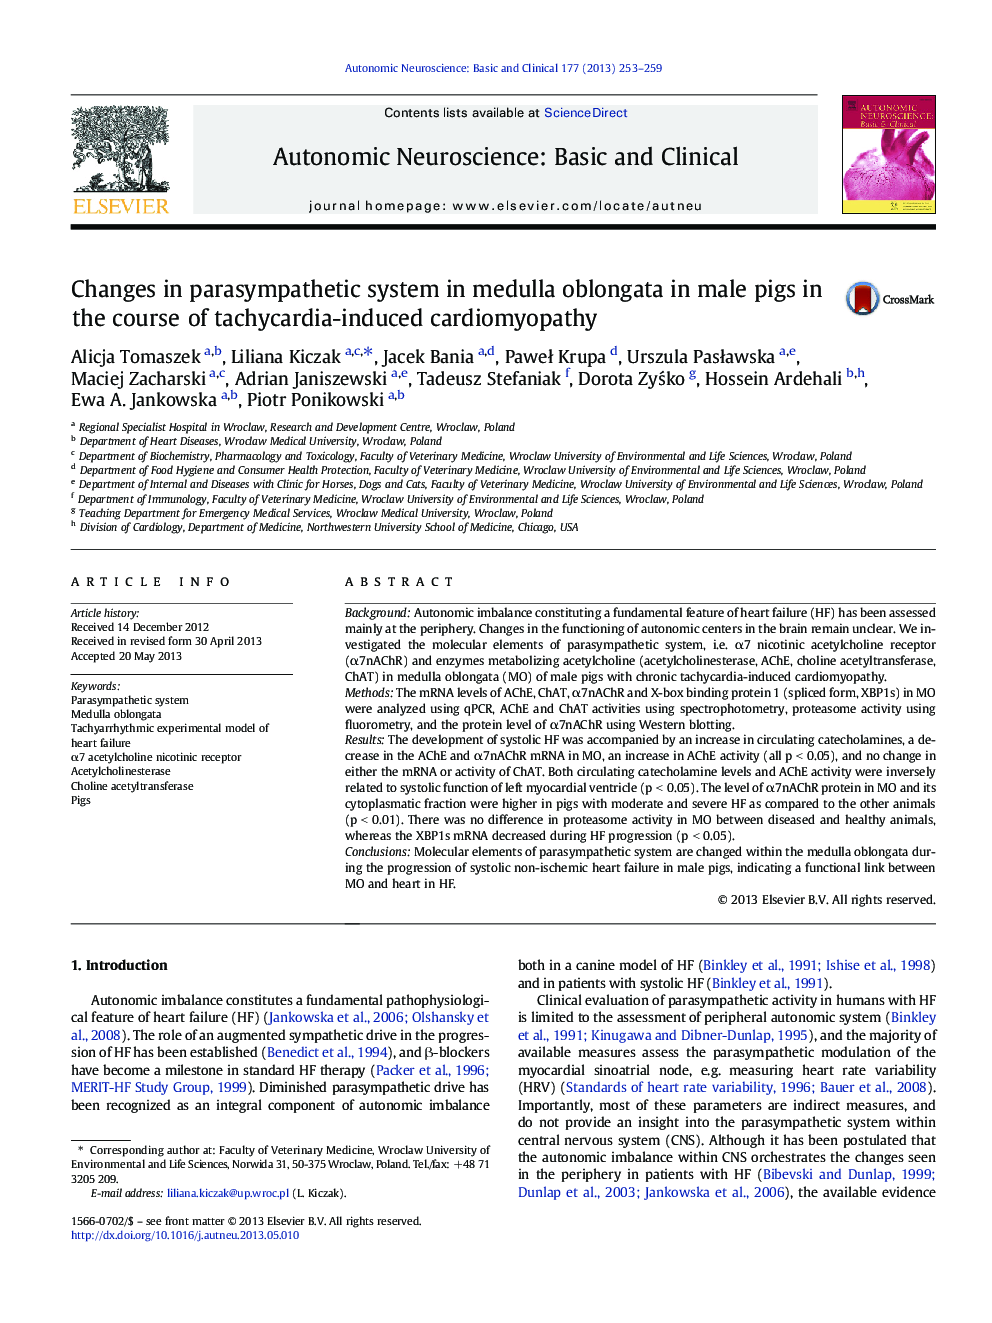 تغییرات سیستم پاراسمپاتیک در مدولا پلنگادا در خوک های مردانه در طی کاردیومیوپاتی ناشی از تاکی کاردی 